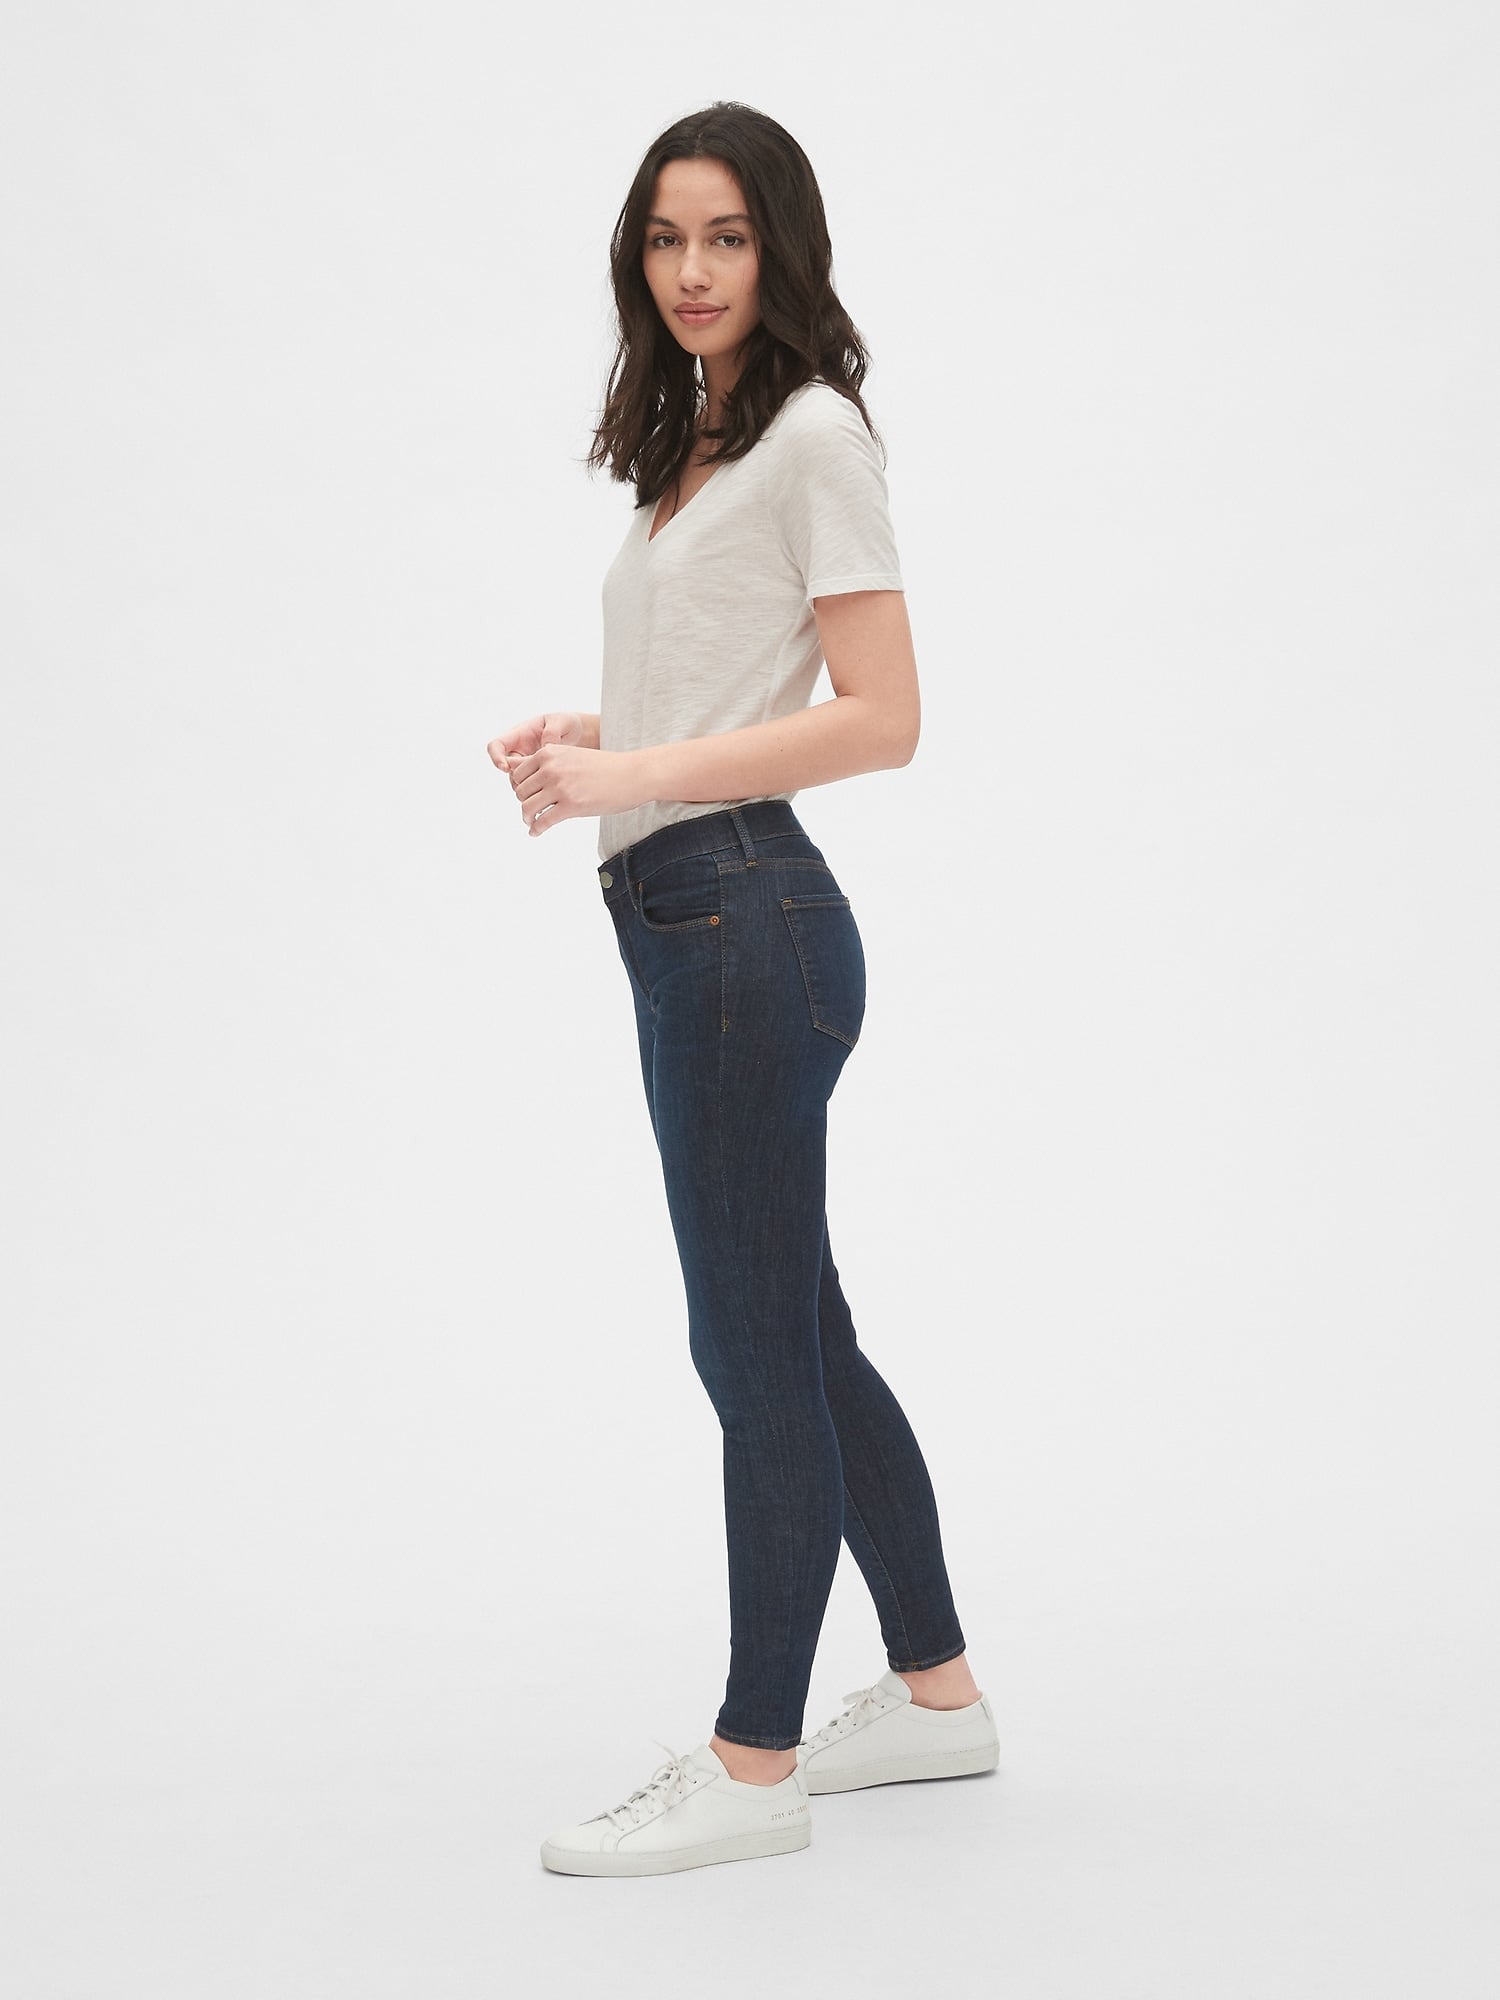 women's gap pants